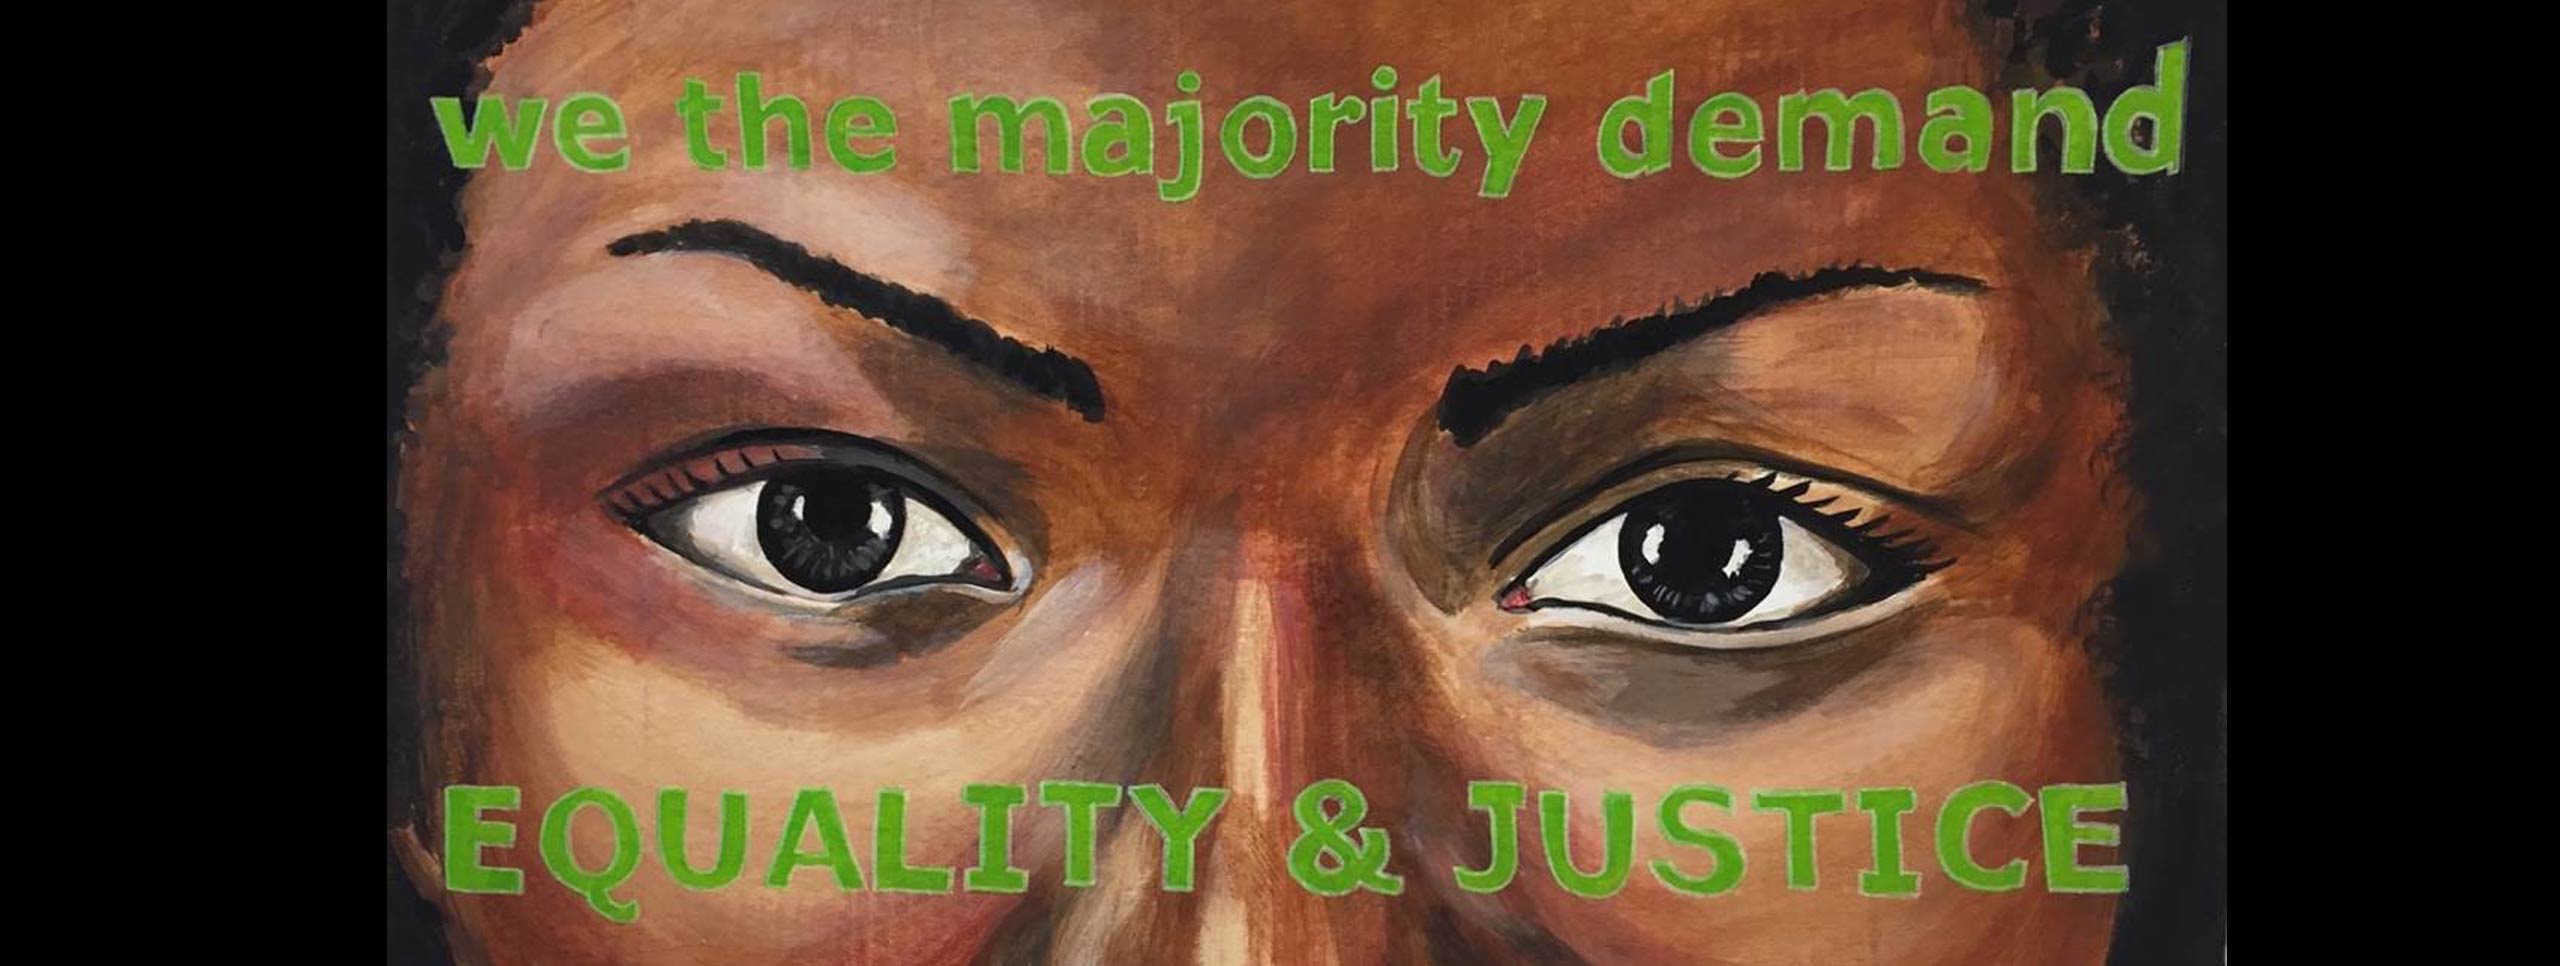 Pintura dos olhos de uma mulher. Pintadas na testa e nas bochechas estão as palavras "nós, a maioria, exigimos / IGUALDADE E JUSTIÇA"